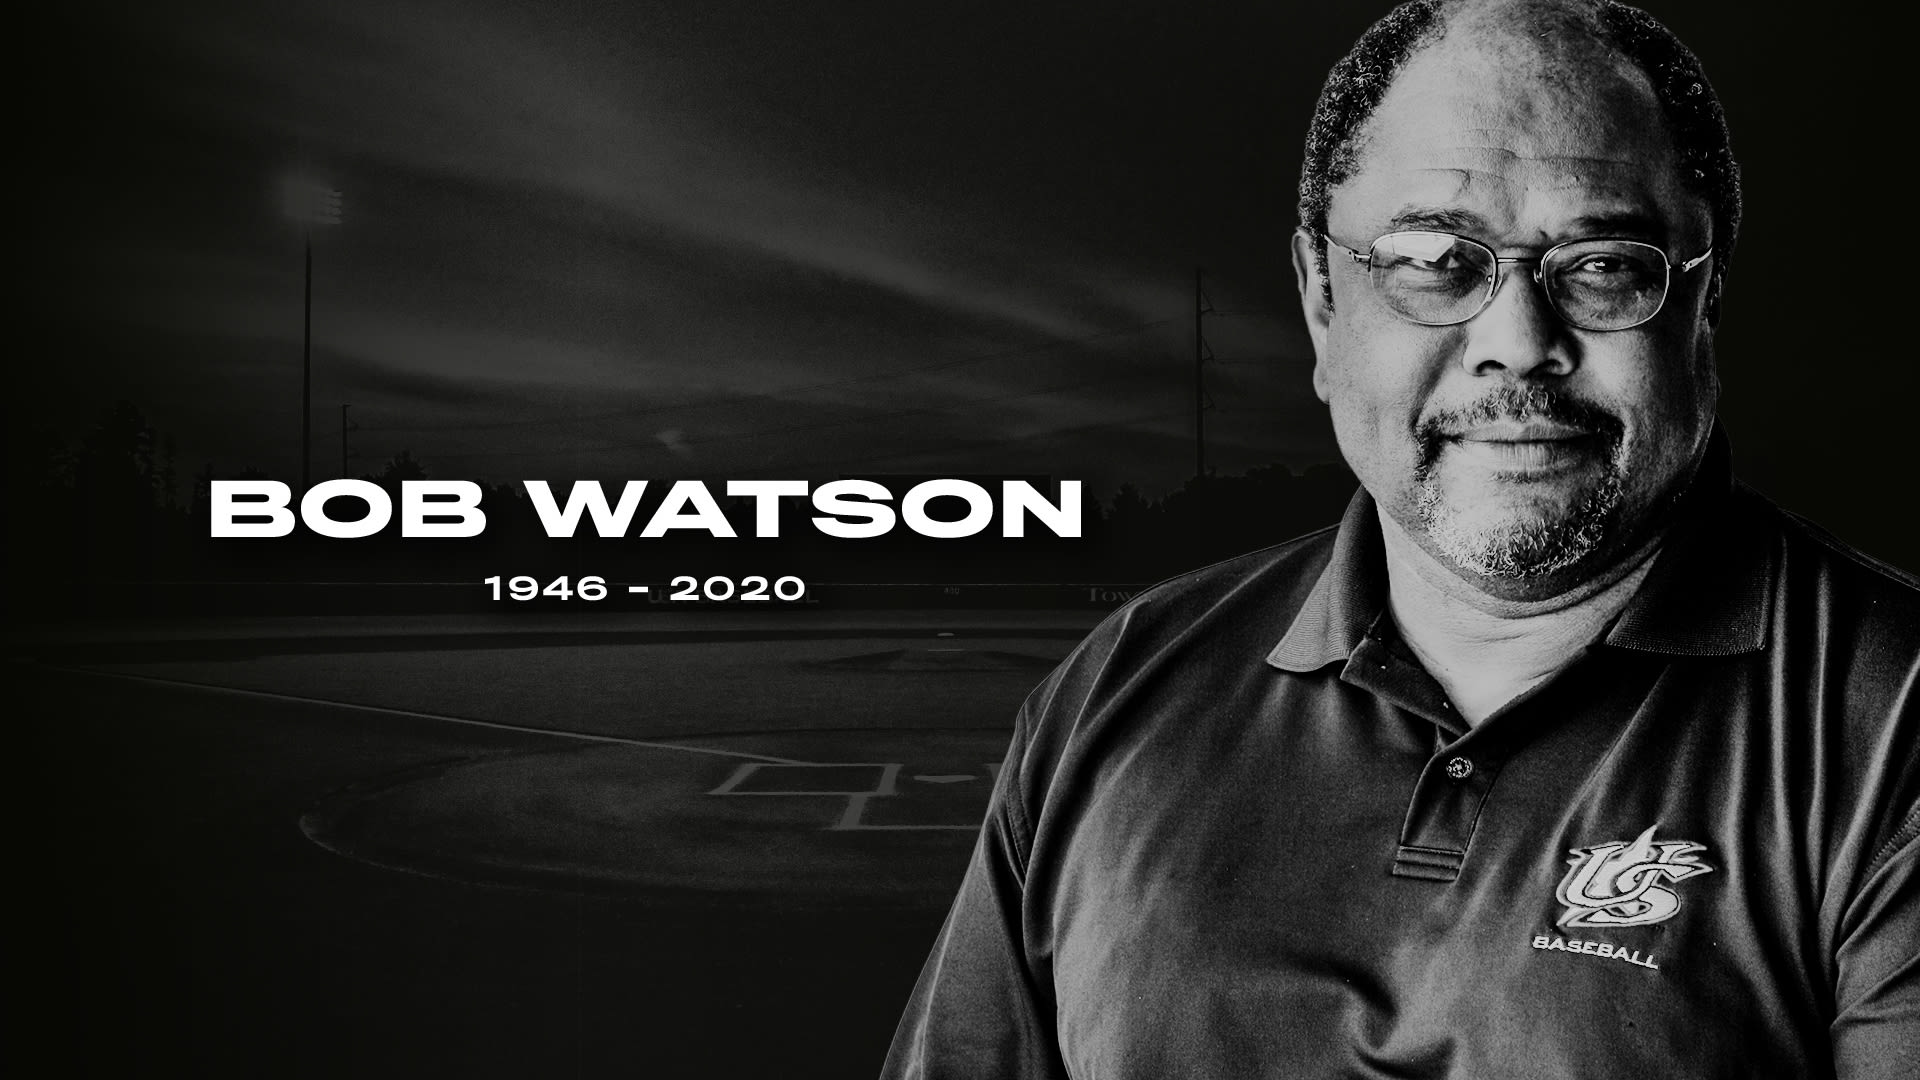 USA Baseball Mourns the Loss of Bob Watson